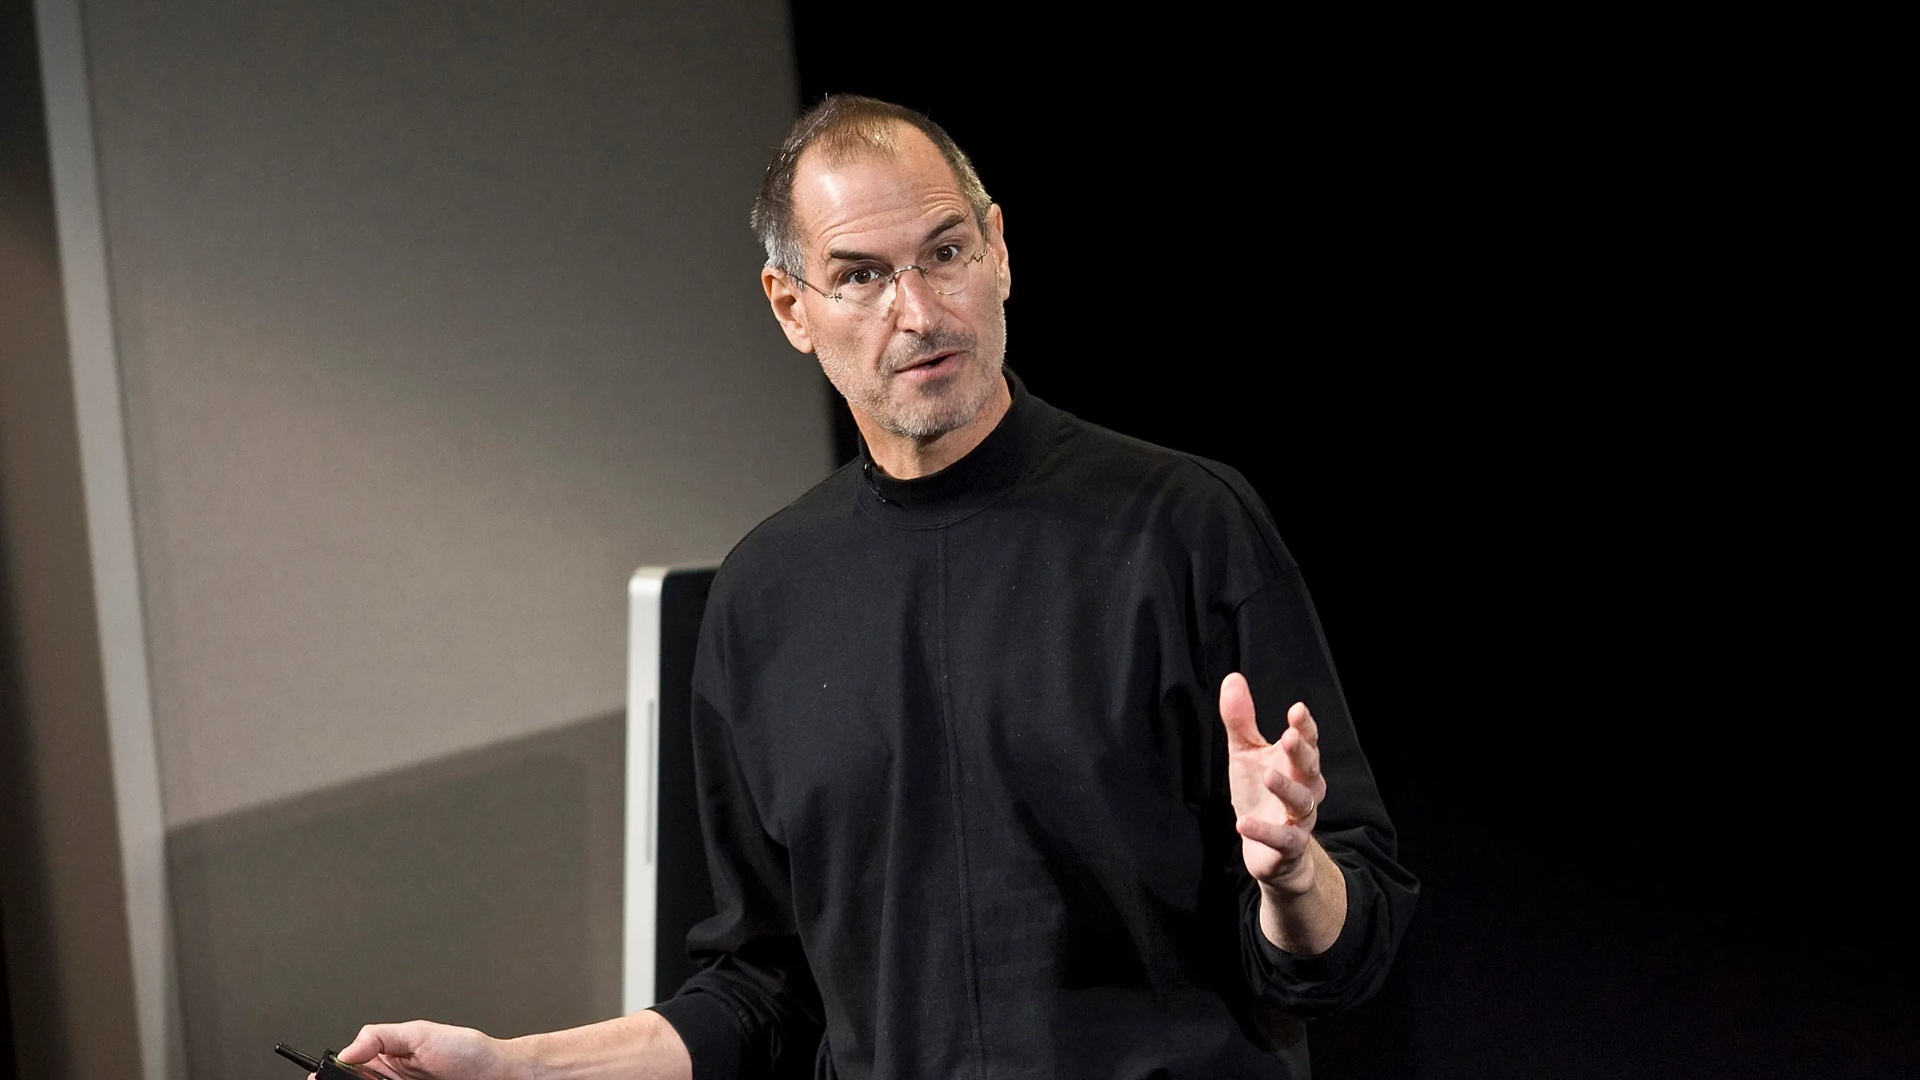 “Të përdorësh logjikën dhe inteligjencën…”/Steve Jobs dhe këshilla e rëndësishme për të vënë në zbatim idetë tuaja!